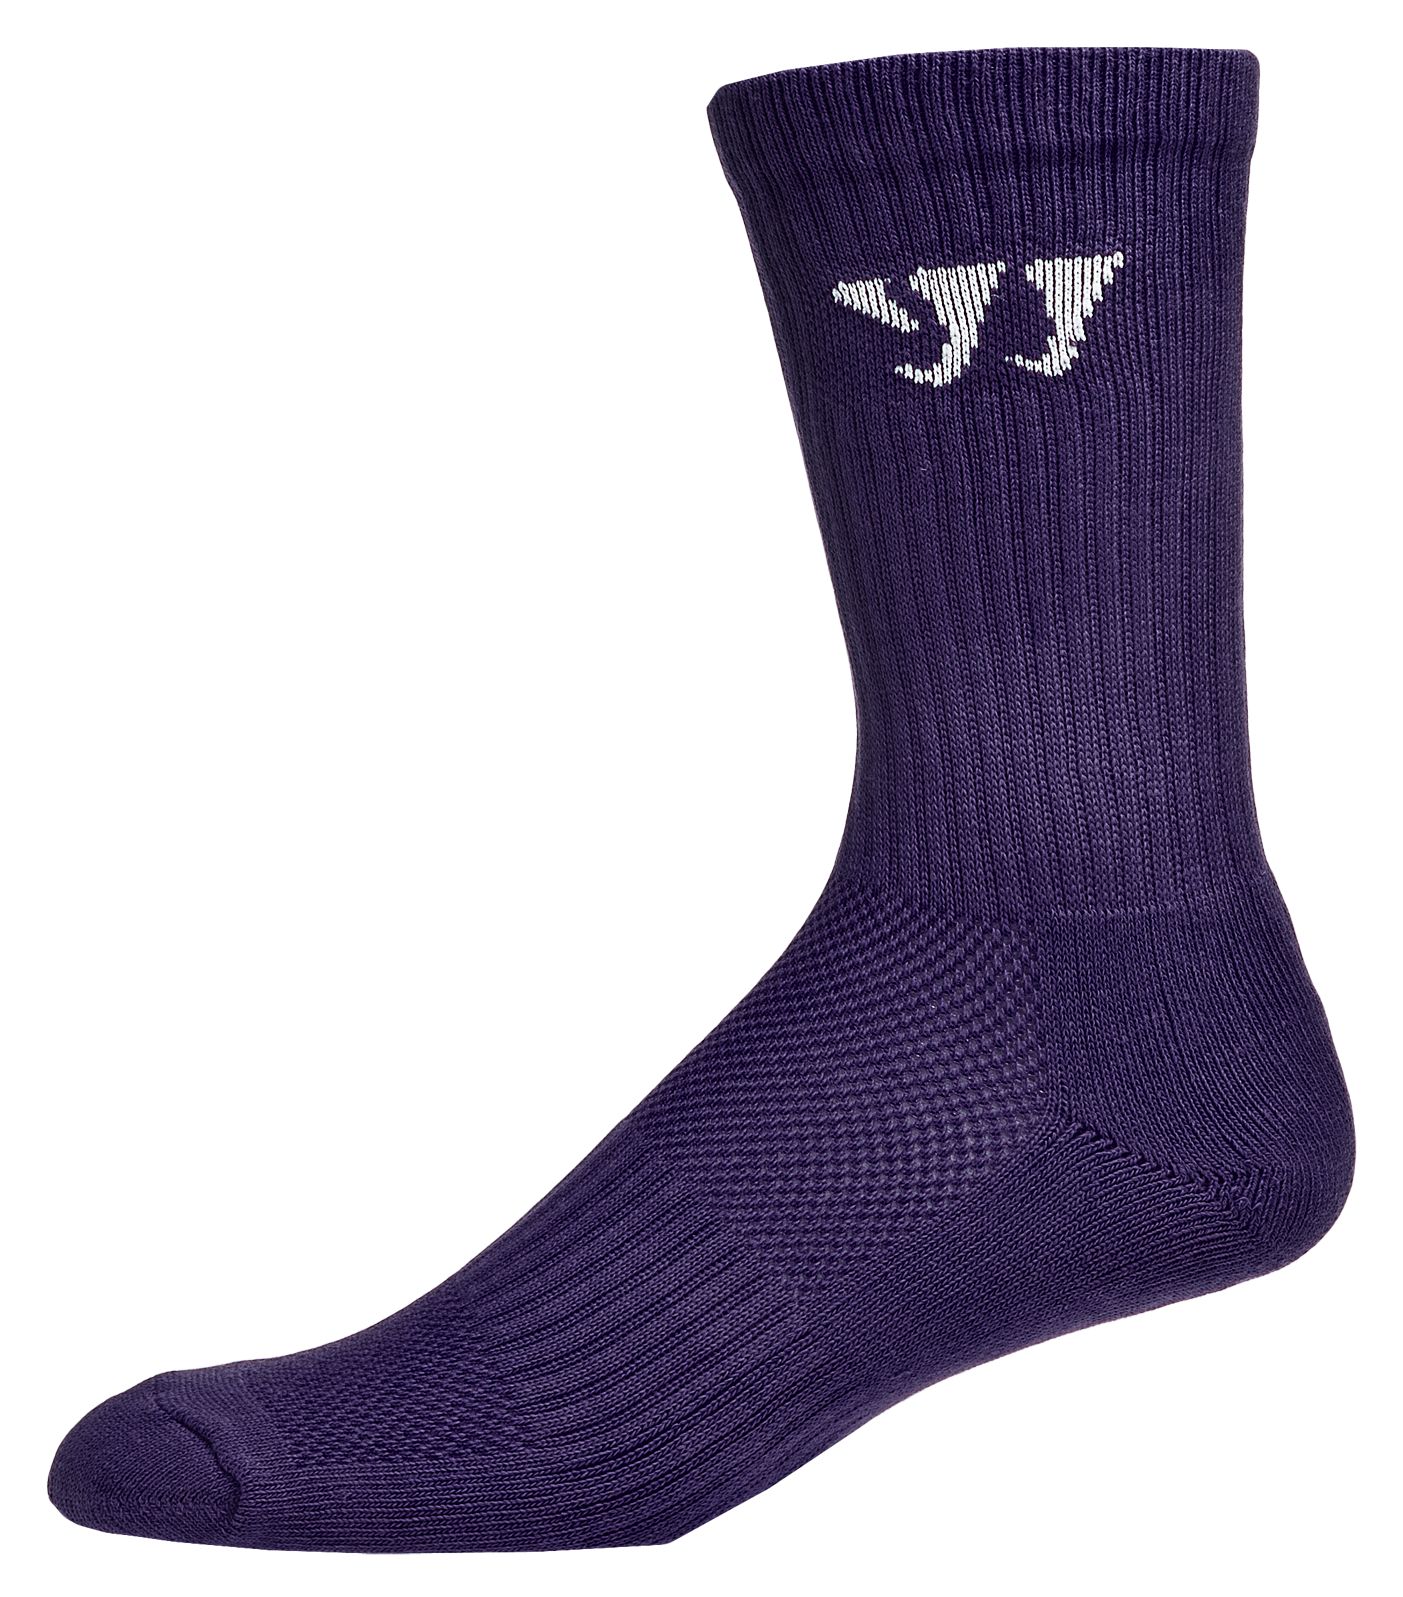 Crew Socks (Single), Team Purple image number 1